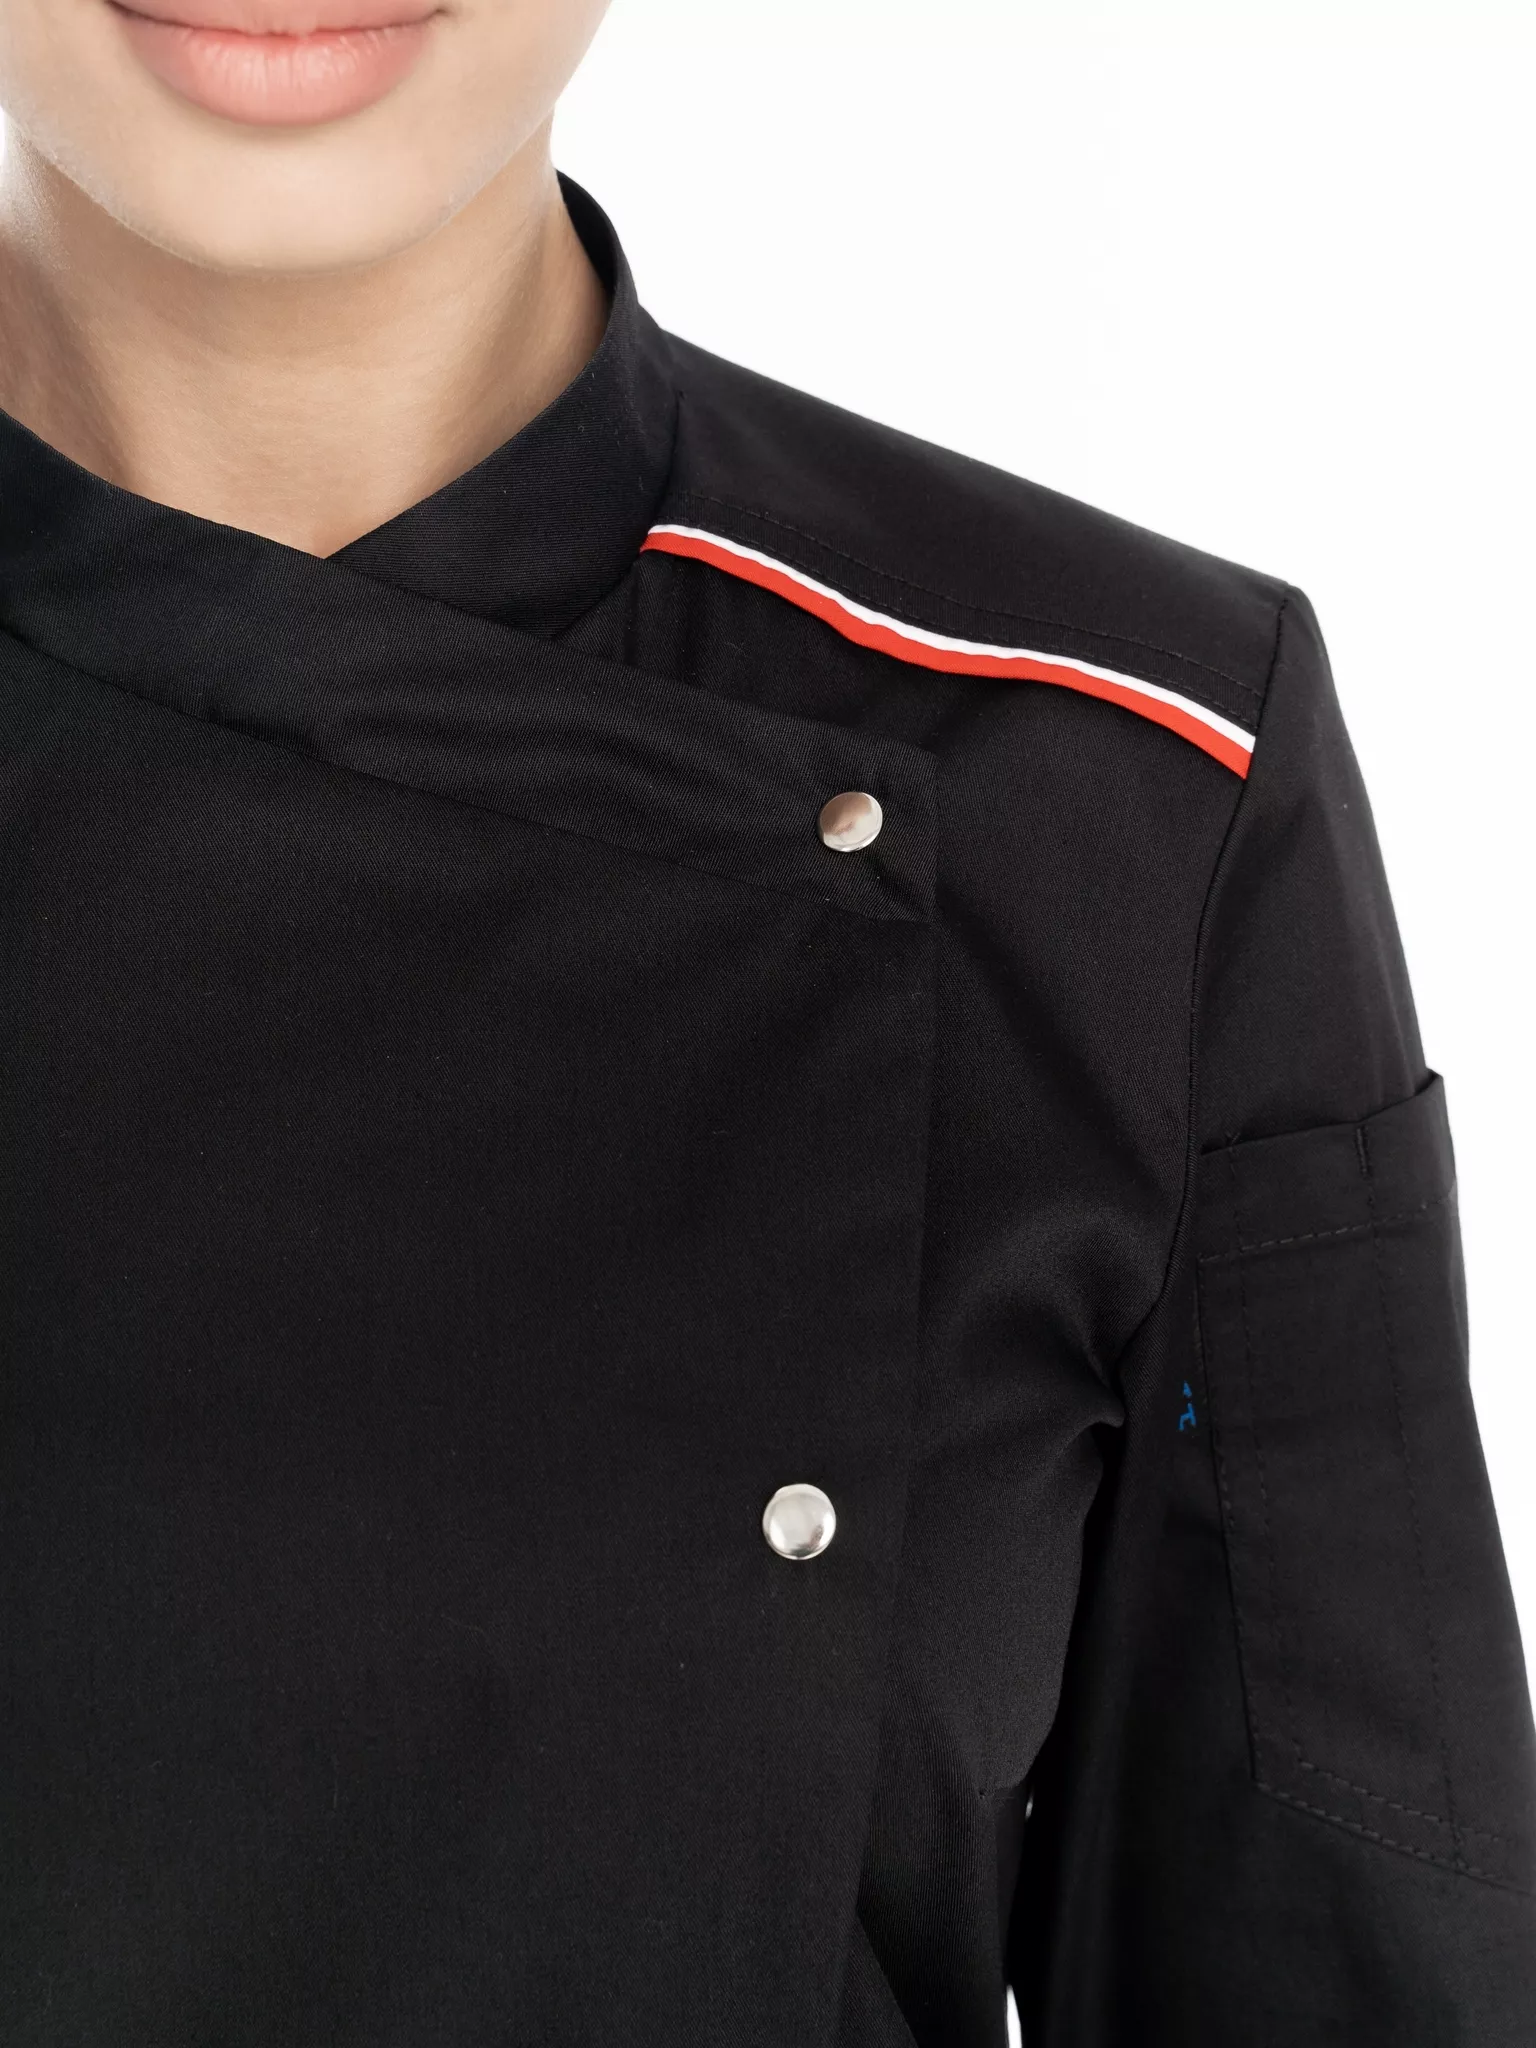 Куртка повара женская КМ.591 р.40-42, рост 170-176 (цвет черный, кант красный, белый)